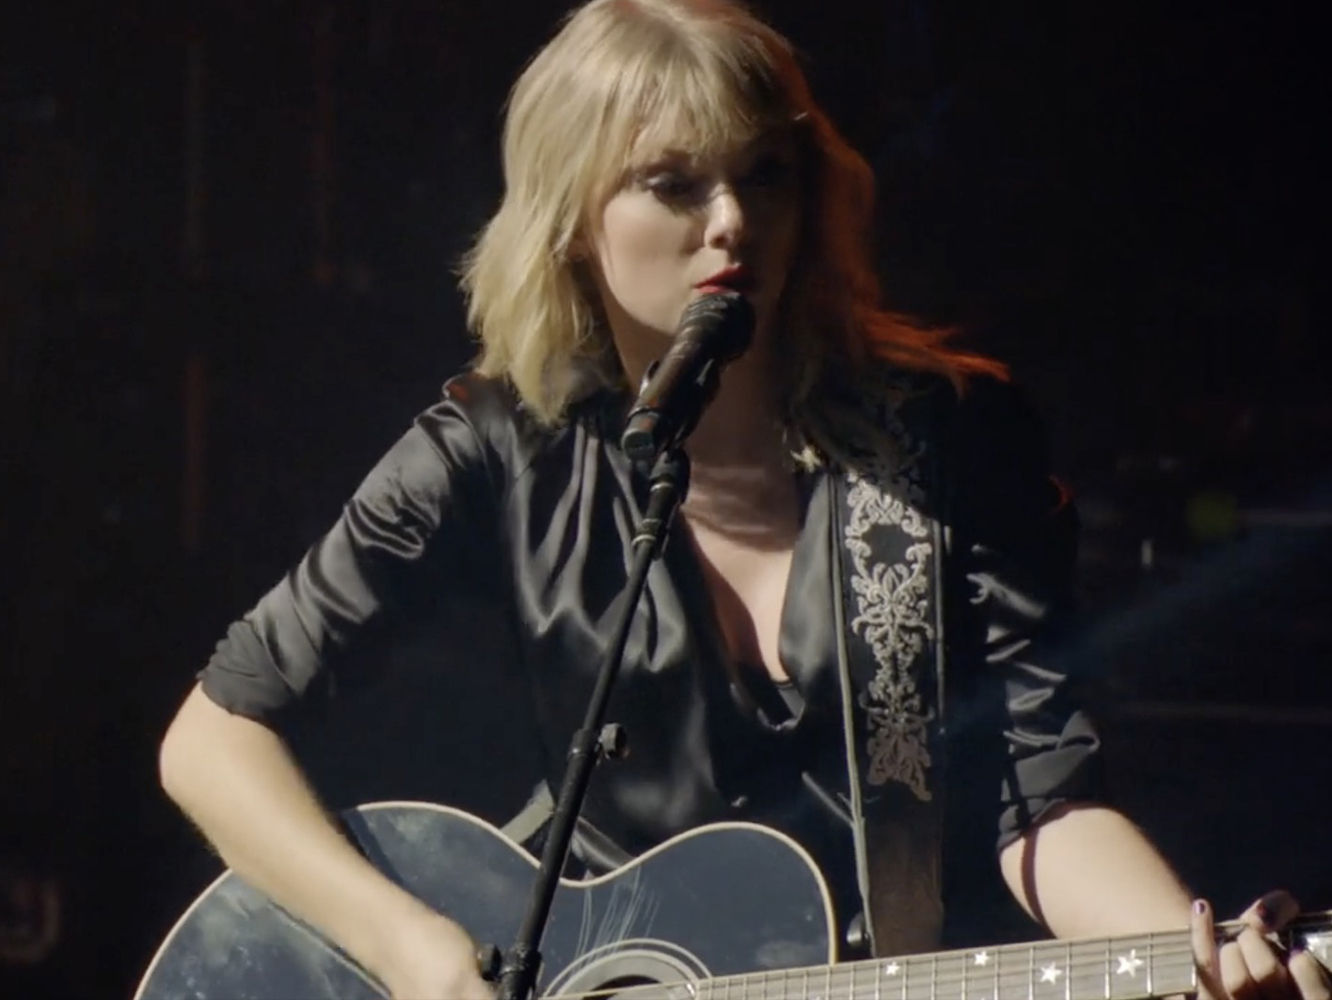  Taylor Swift lanza el vídeo de ‘The Man’, aunque no exactamente el que sus fans esperaban